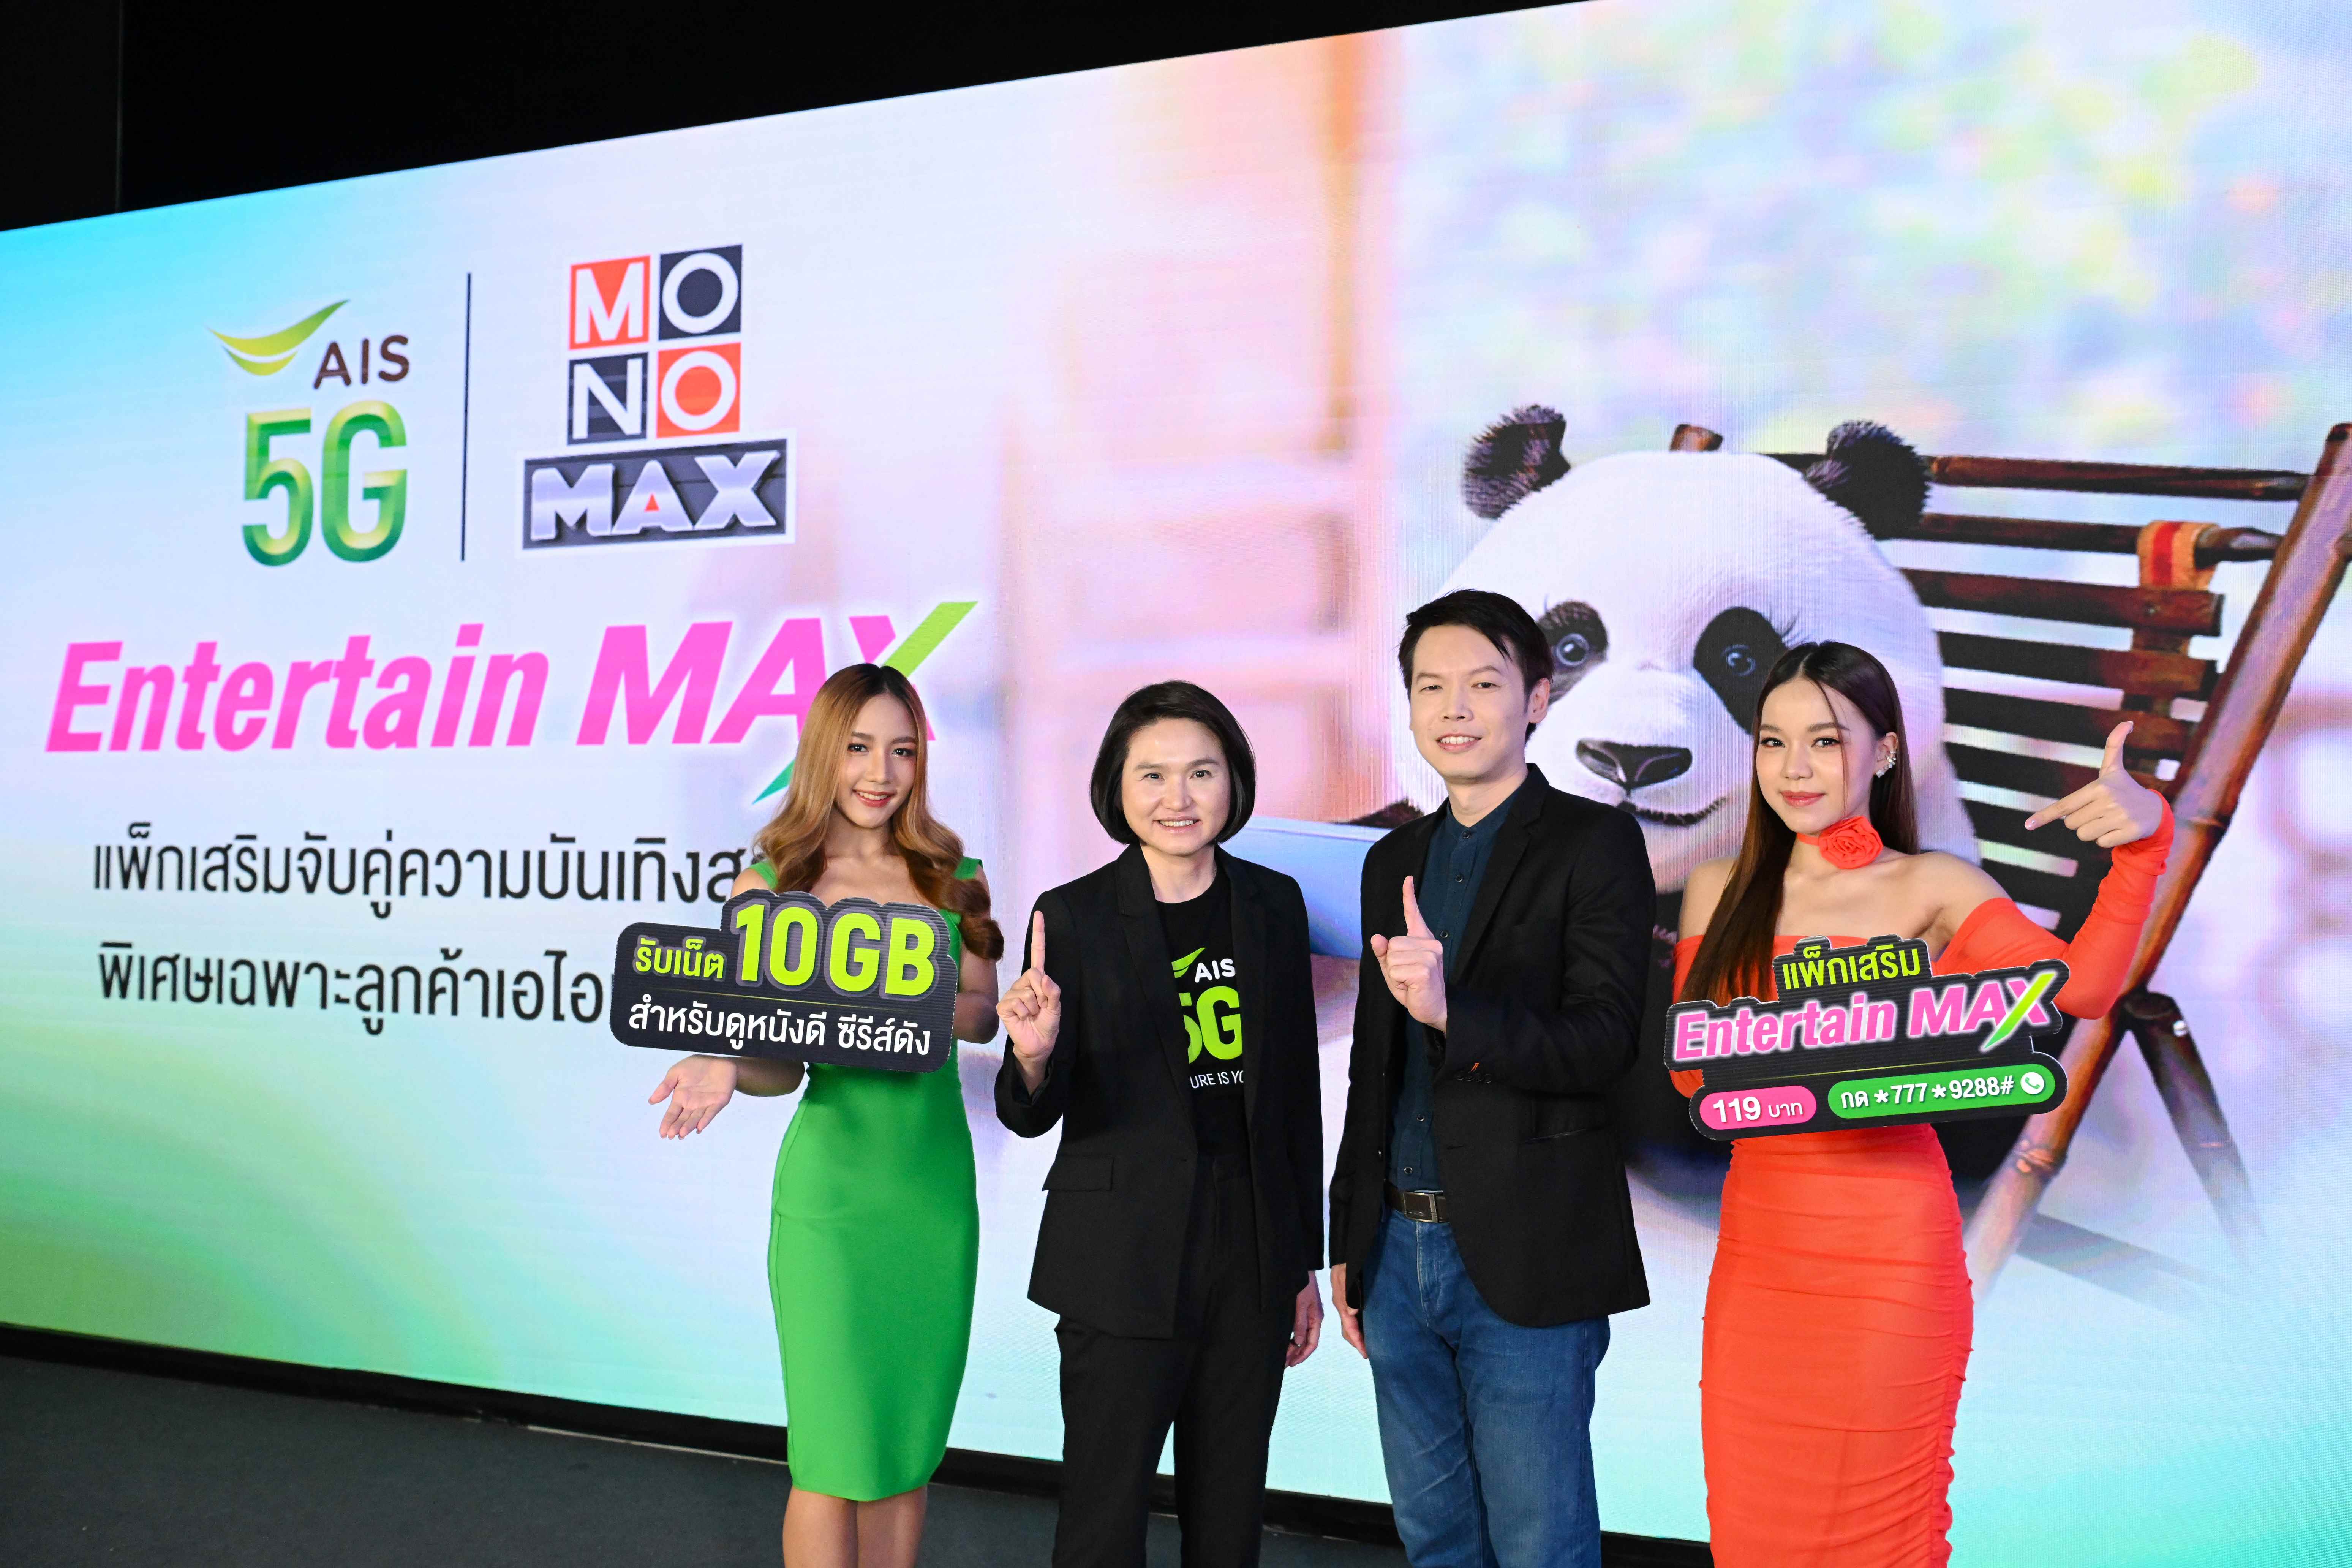 AIS 5G จับมือ MONOMAX สุดยอดผู้ให้บริการคอนเทนต์ชั้นนำของไทยเปิดแพ็กแห่งปี